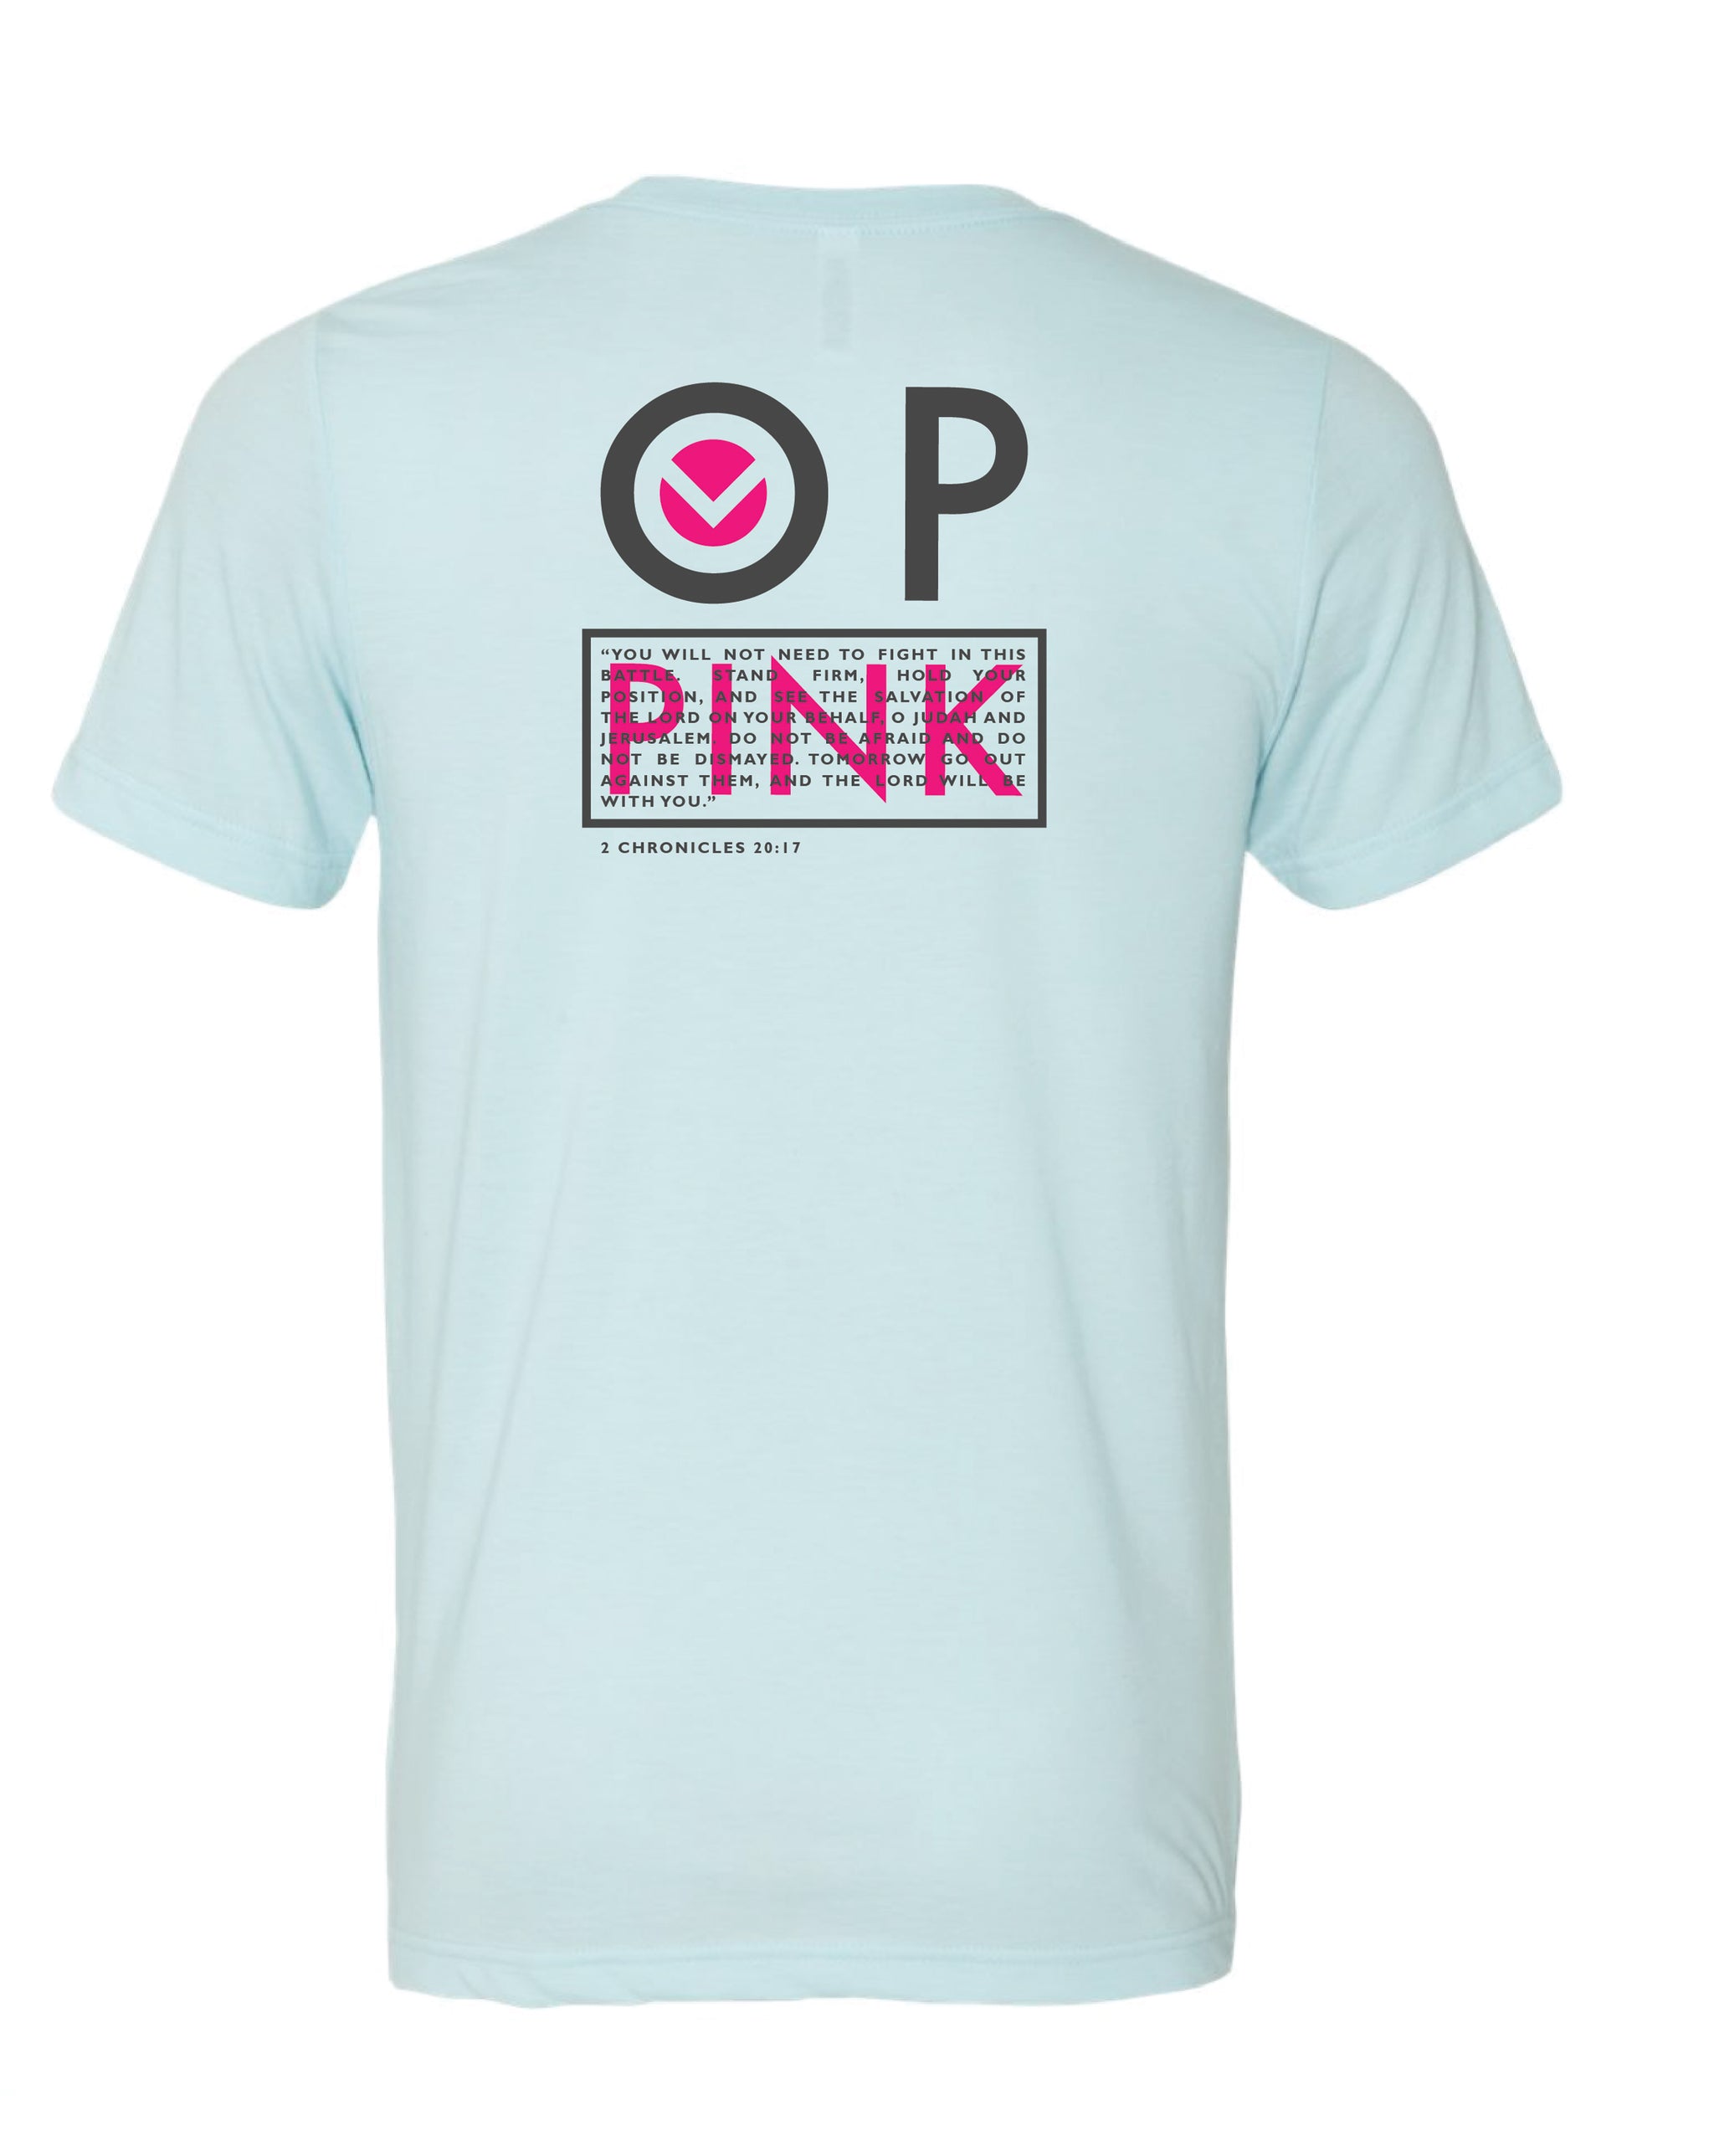 OP PINK 2020 Fundraiser Tee Shirt